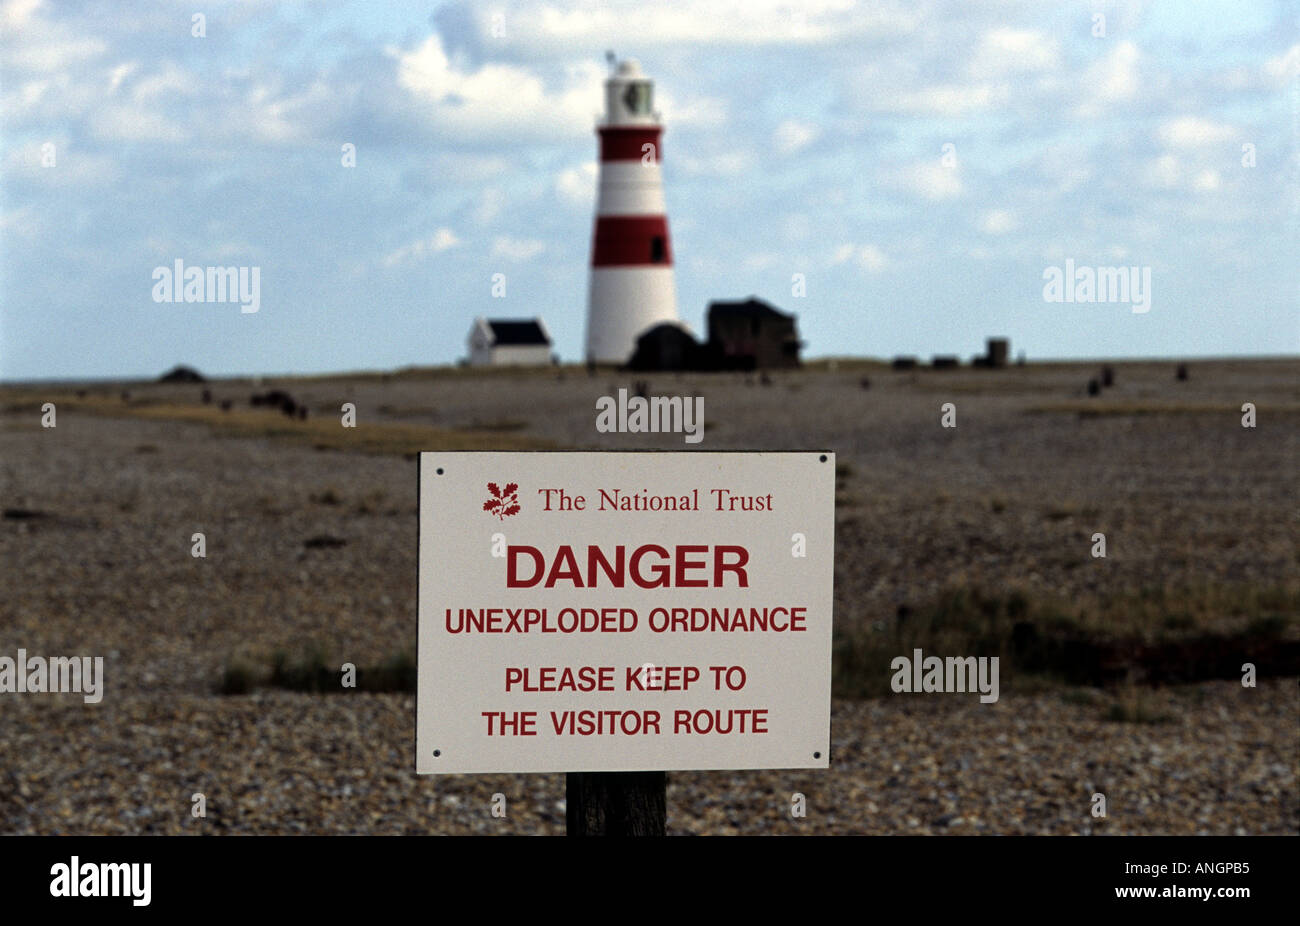 National Trust unterschreiben Warnung von unexploded Artillerie, Orfordness, Suffolk, UK. Stockfoto